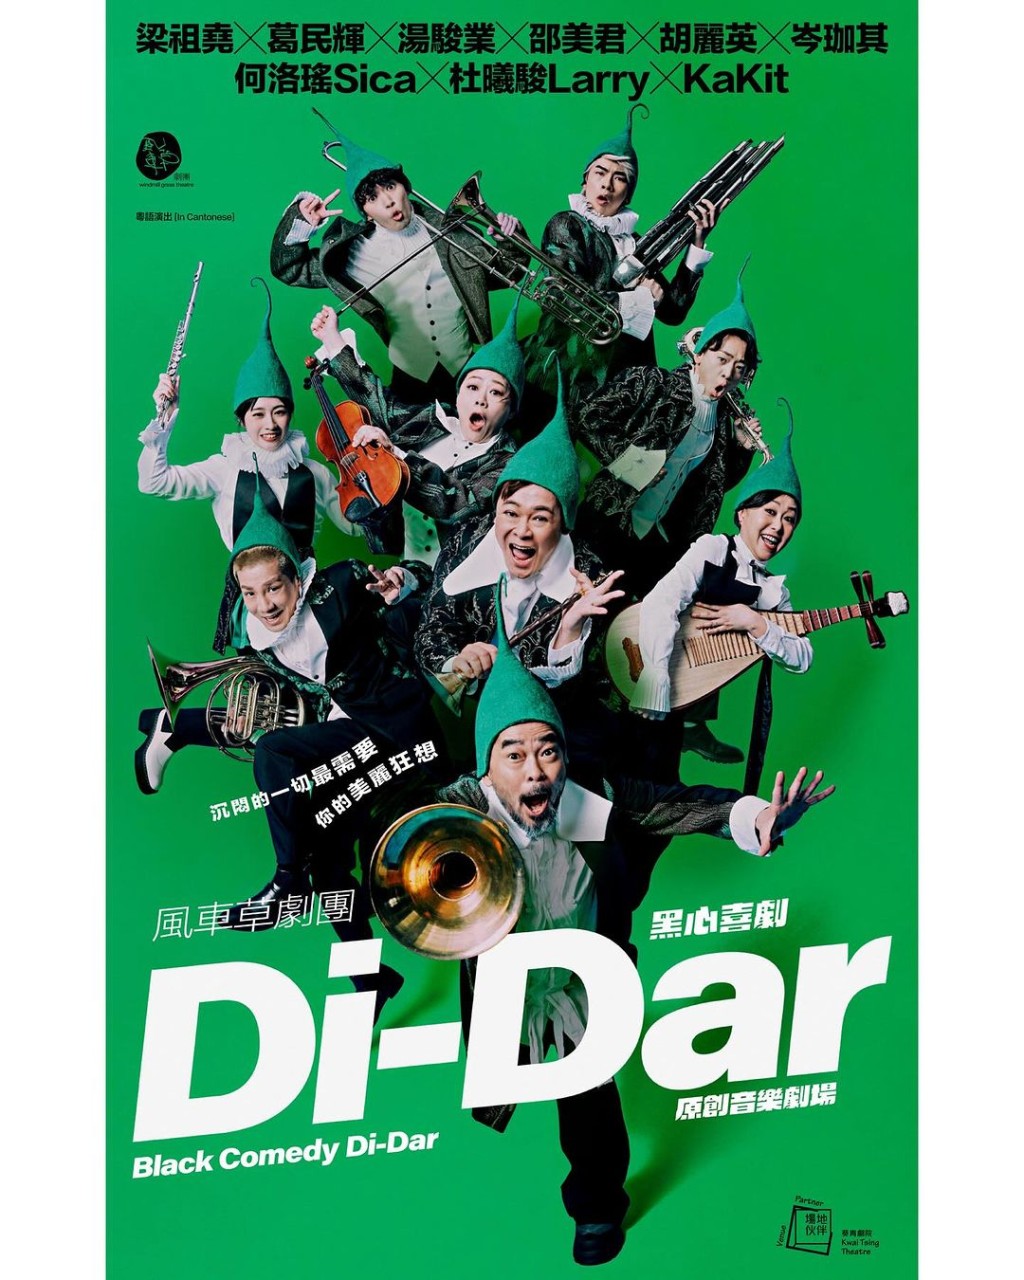 《Di-Dar音樂劇場》將於8月演出。